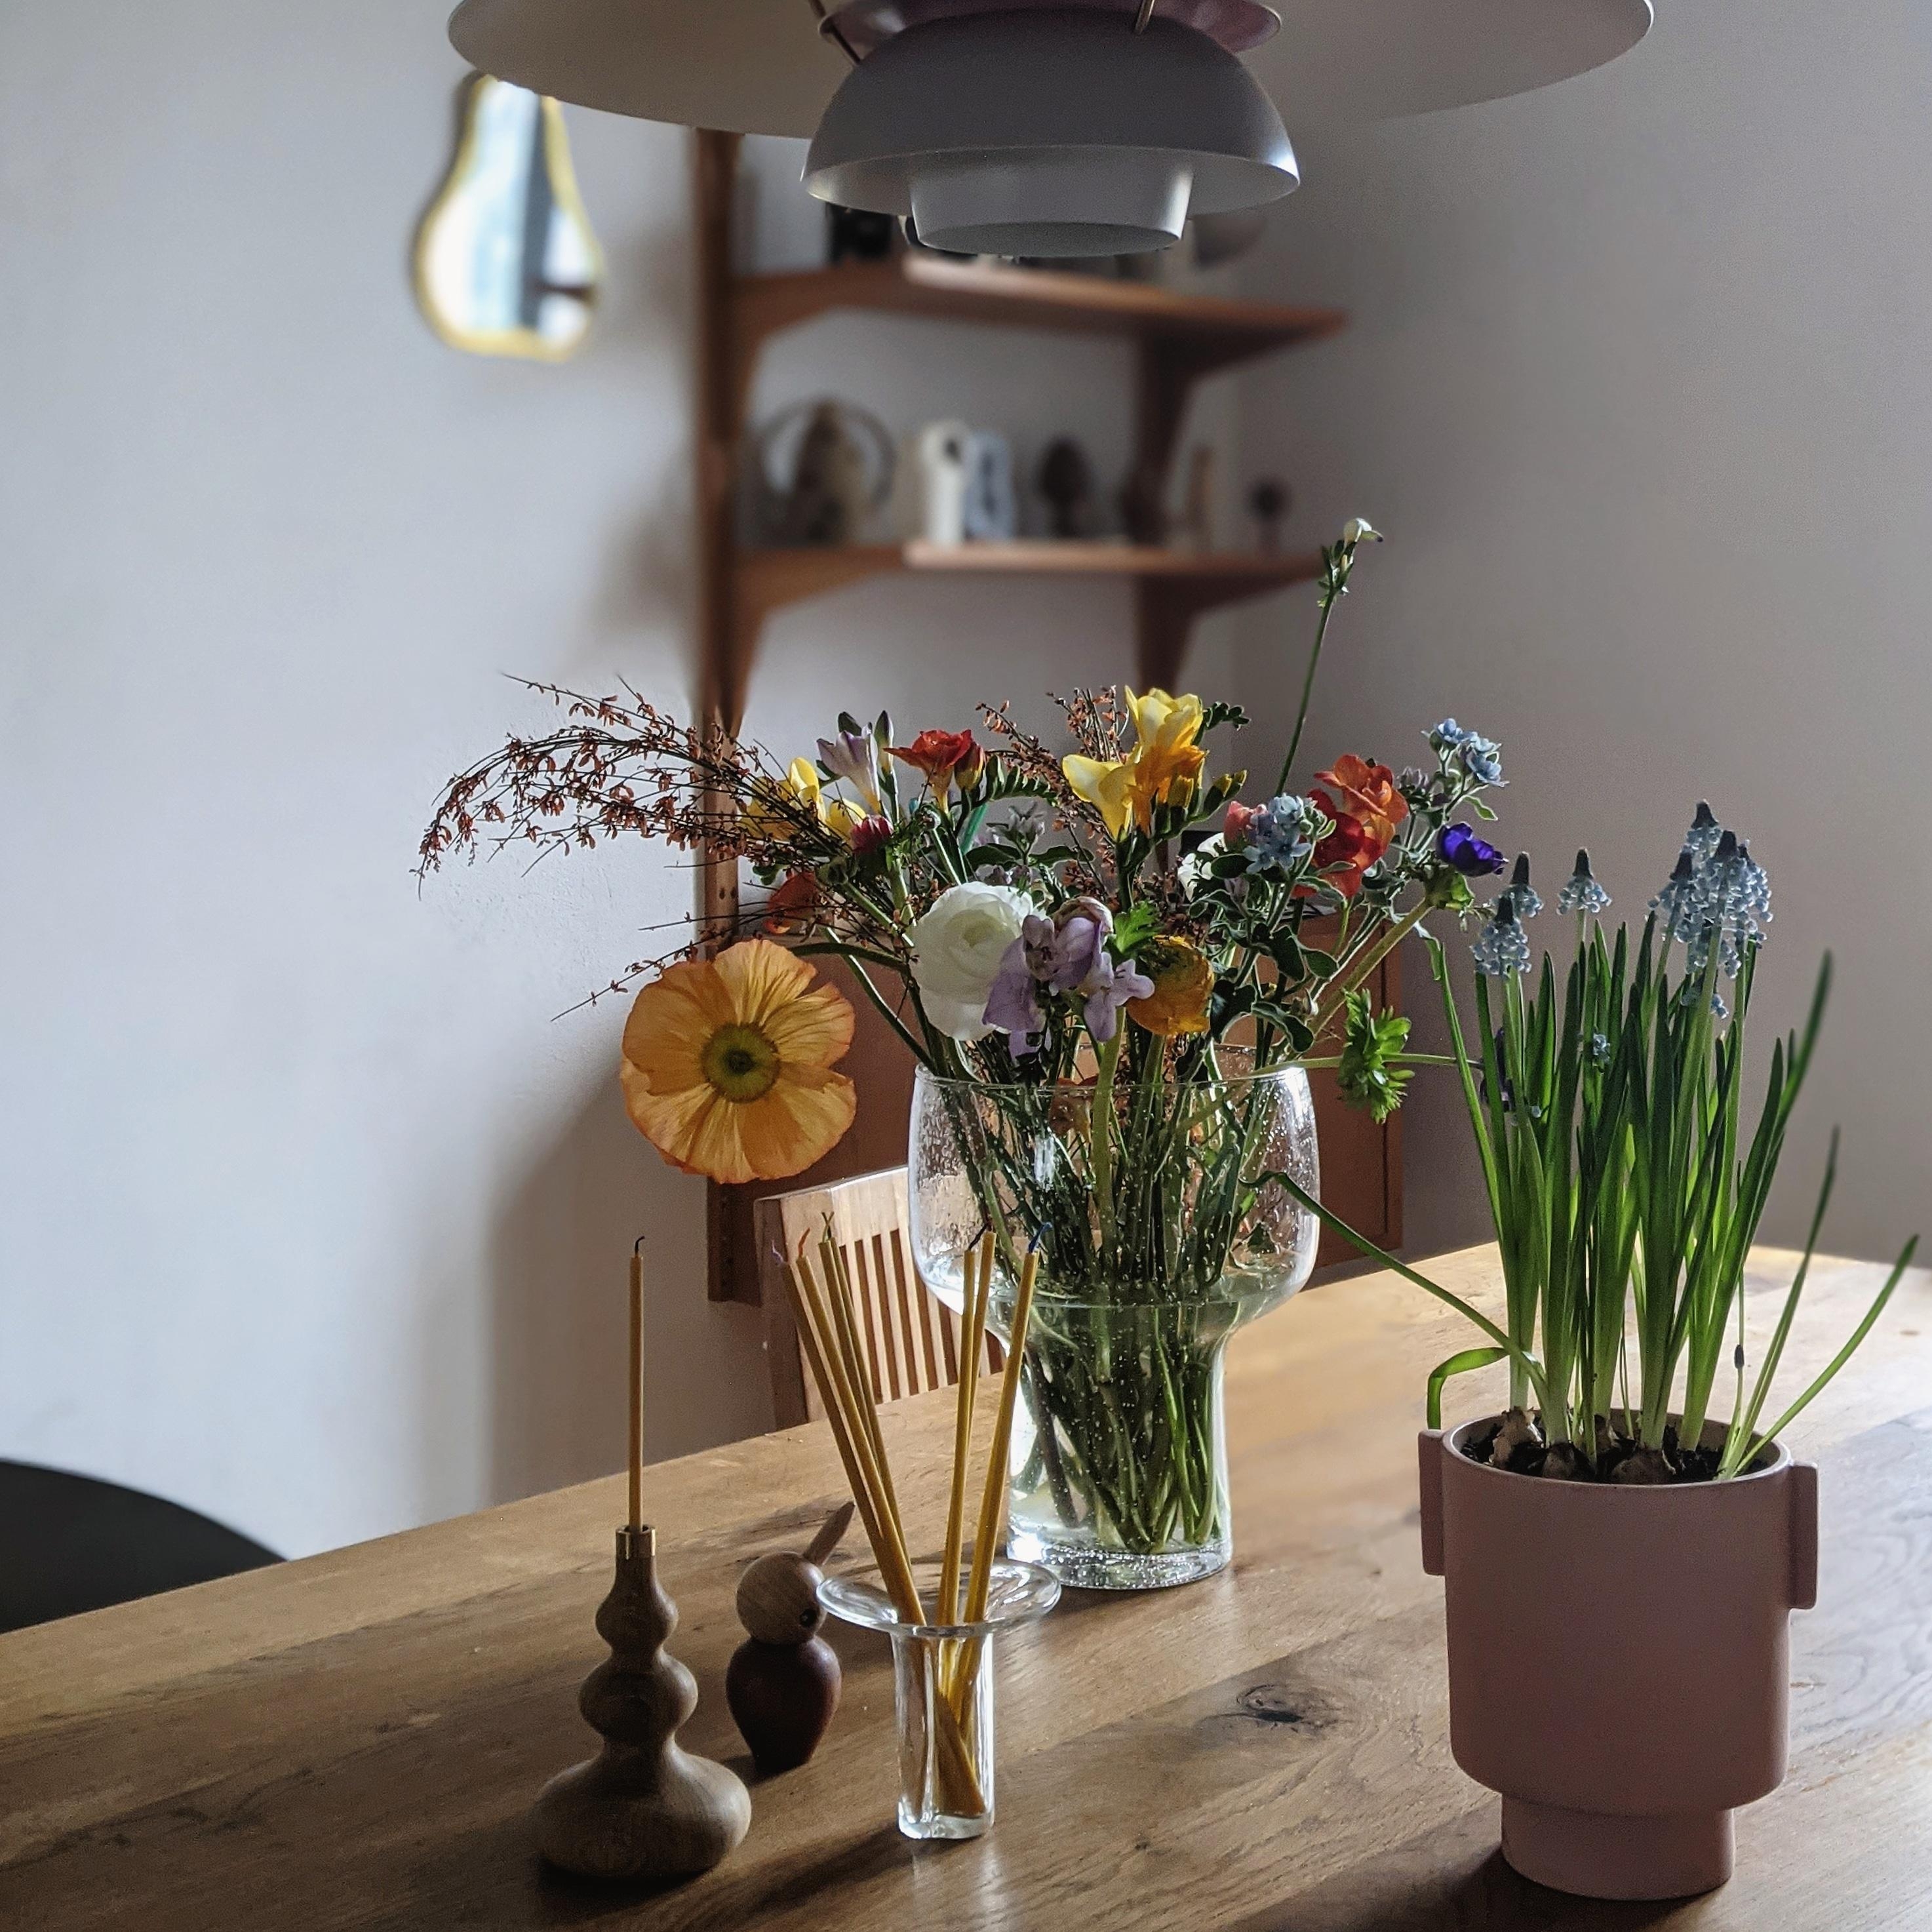 #blumen#freshflowerfriday#wohnen#interior#home#scandinavian#living#homestory#altbau#couchstyle